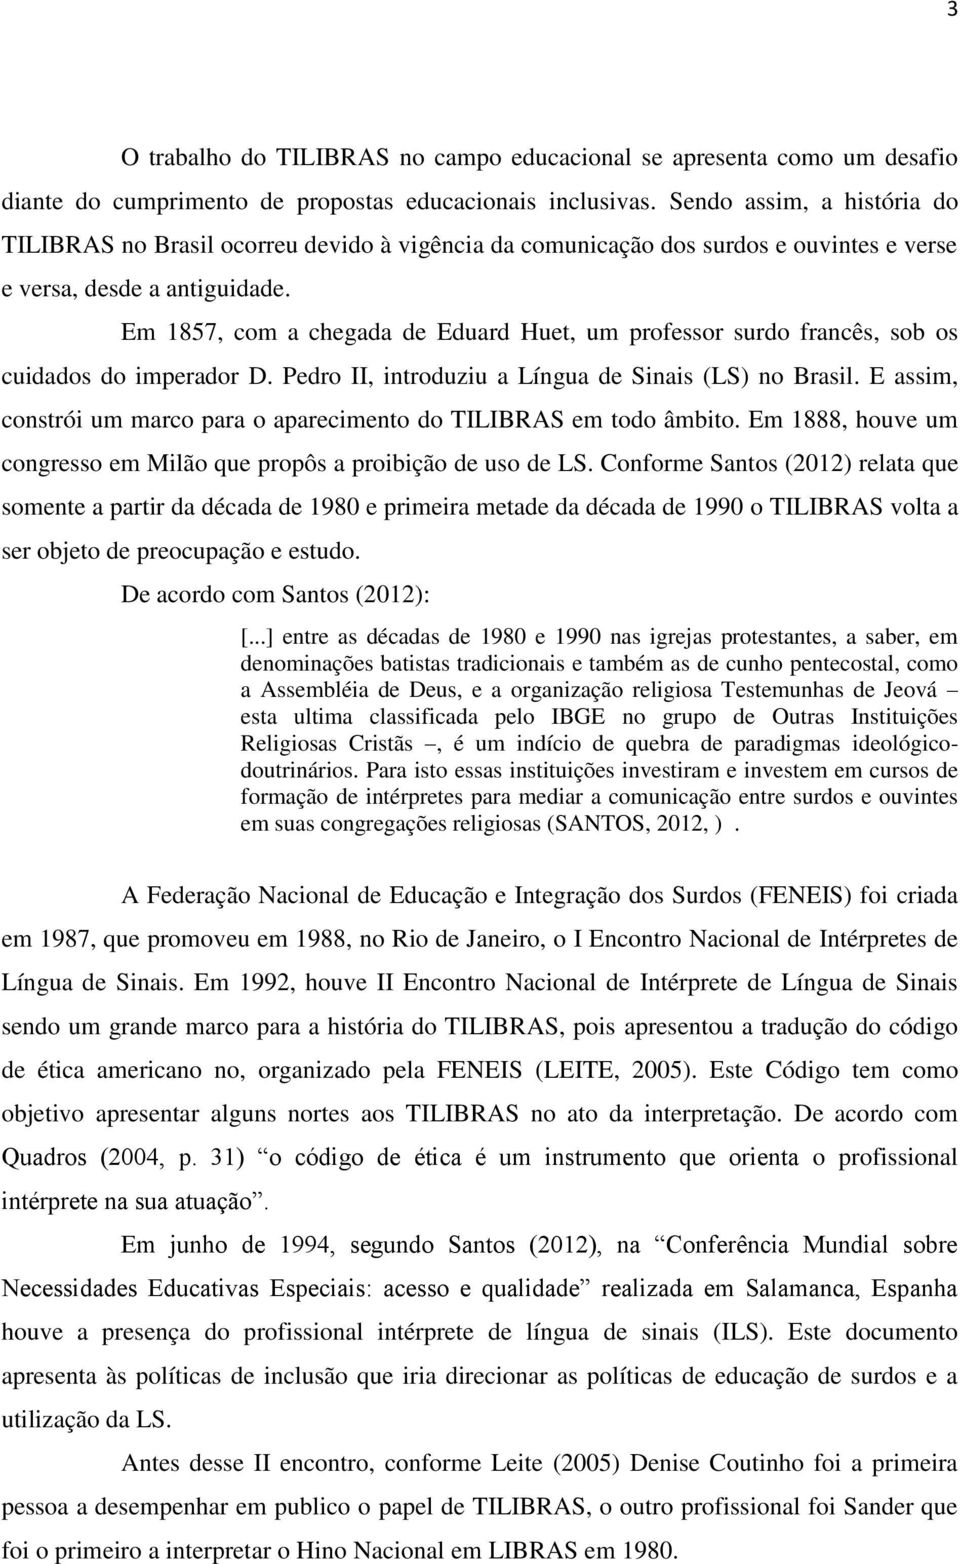 Em 1857, com a chegada de Eduard Huet, um professor surdo francês, sob os cuidados do imperador D. Pedro II, introduziu a Língua de Sinais (LS) no Brasil.